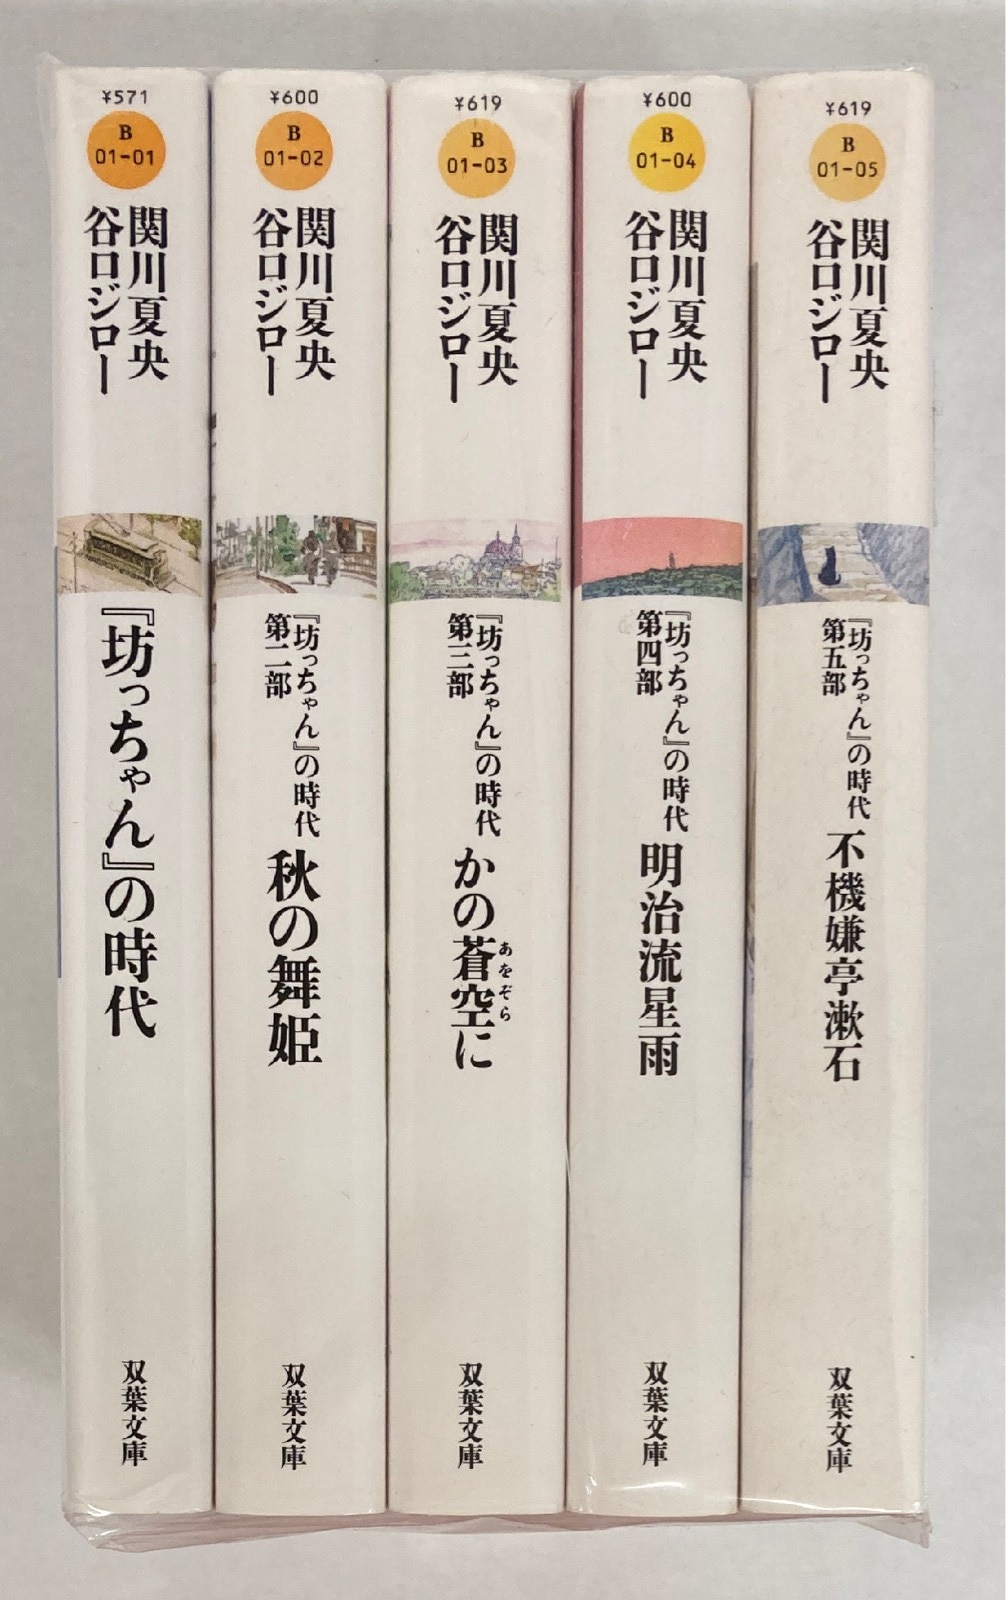 坊っちゃん』の時代 文庫版全5巻セット